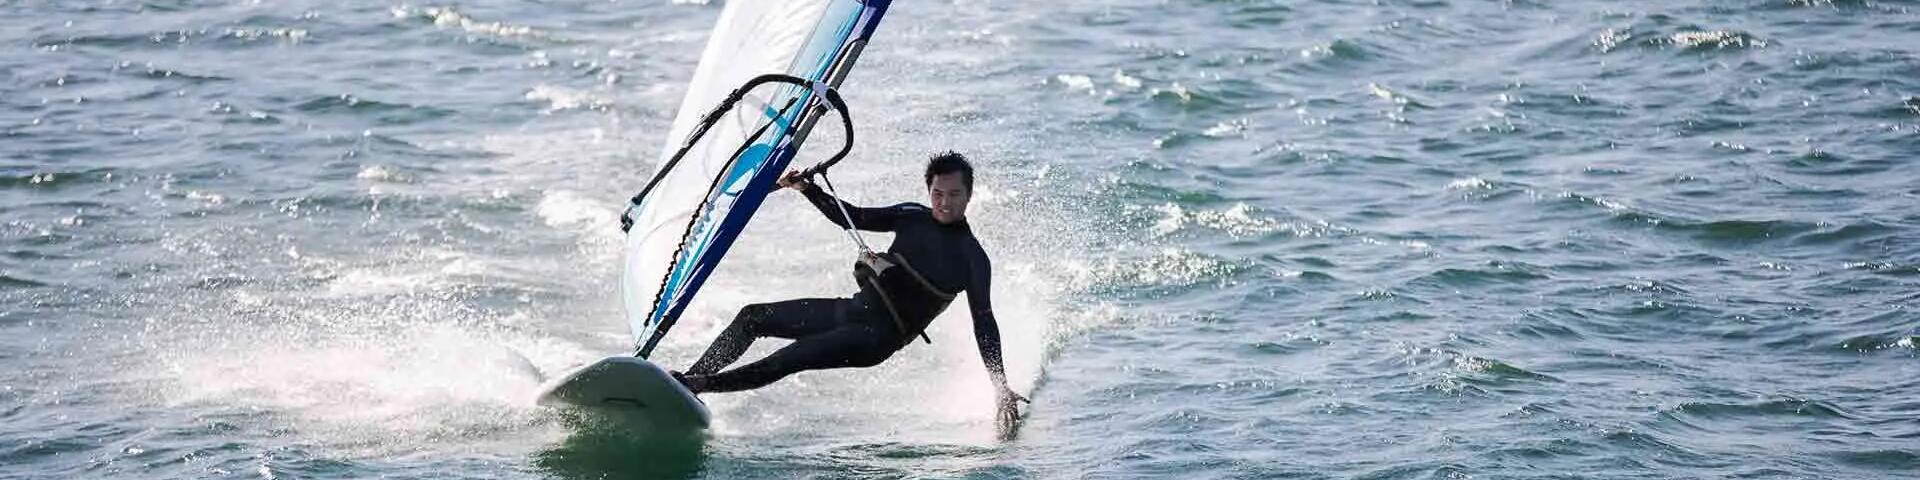 mężczyzna w piance pływackiej uprawiający windsurfing